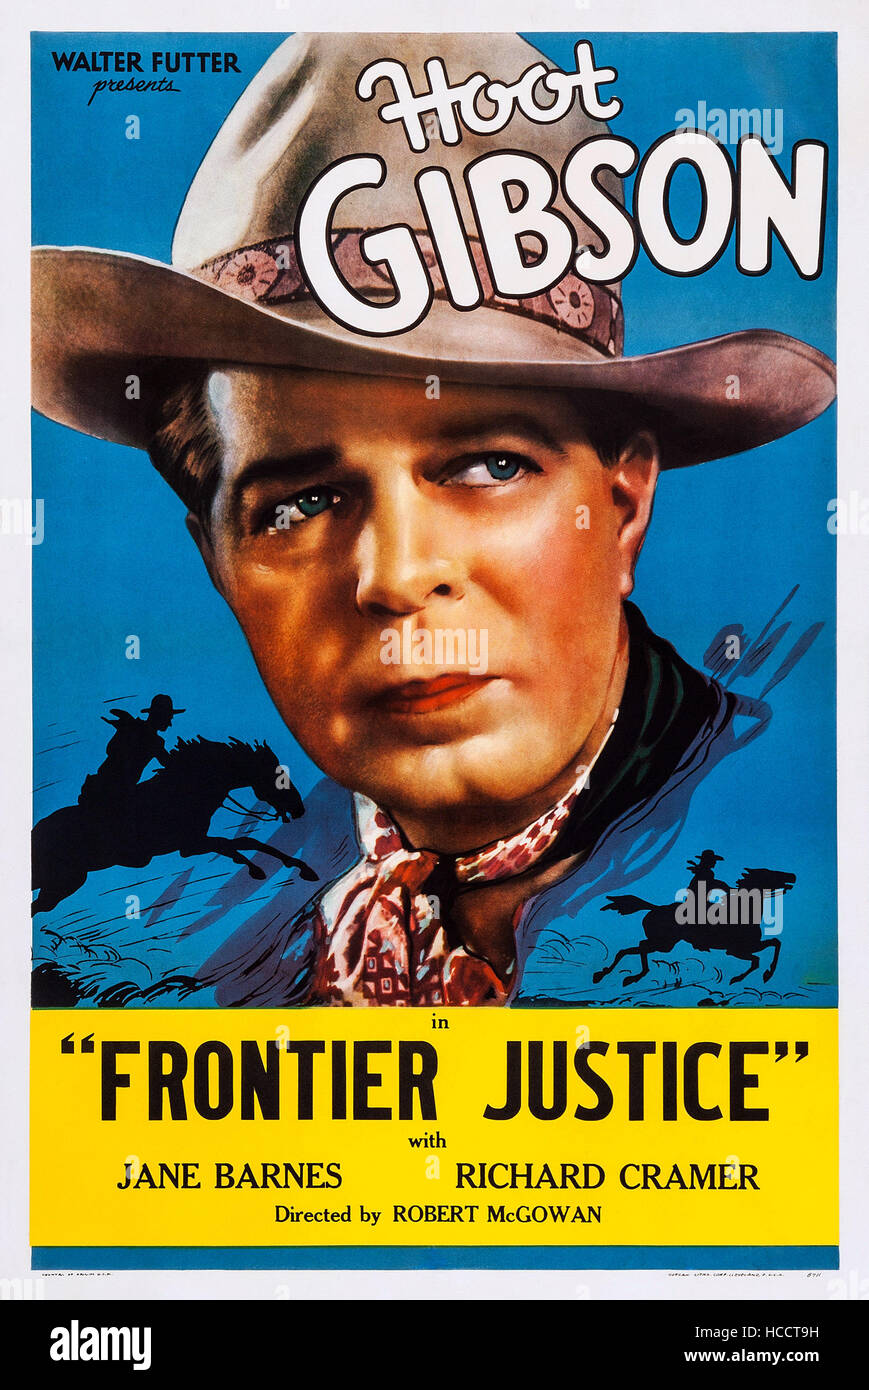 Джейн Барнс. Hoot Gibson. Плакаты Гибсон. Ed "Hoot" Gibson. Frontier justice